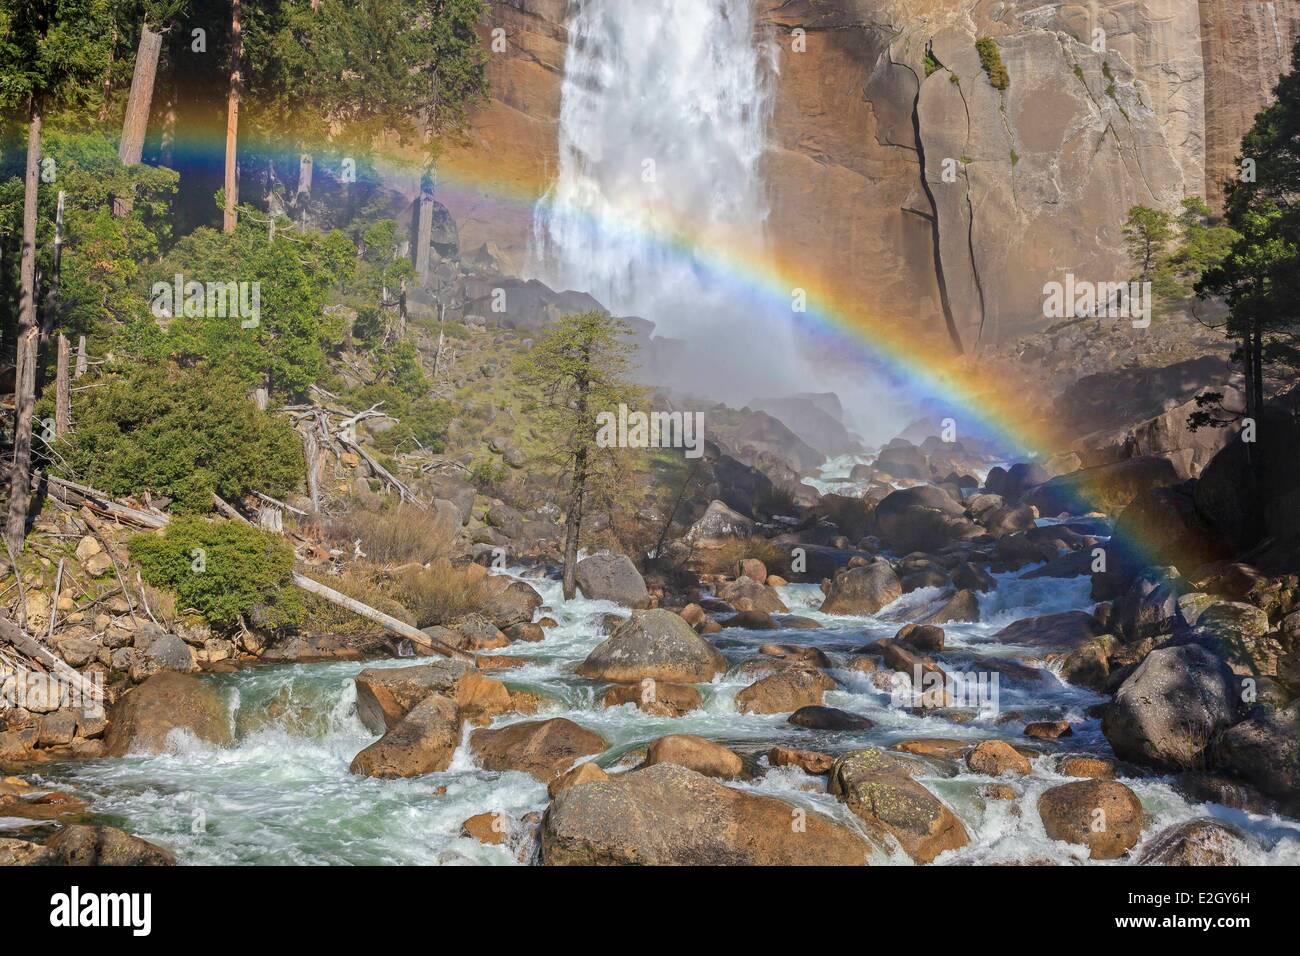 Stati Uniti California Sierra Nevada Parco Nazionale Yosemite elencati come patrimonio mondiale dall' UNESCO Yosemite Valley Nevada Fall di arcobaleno Foto Stock